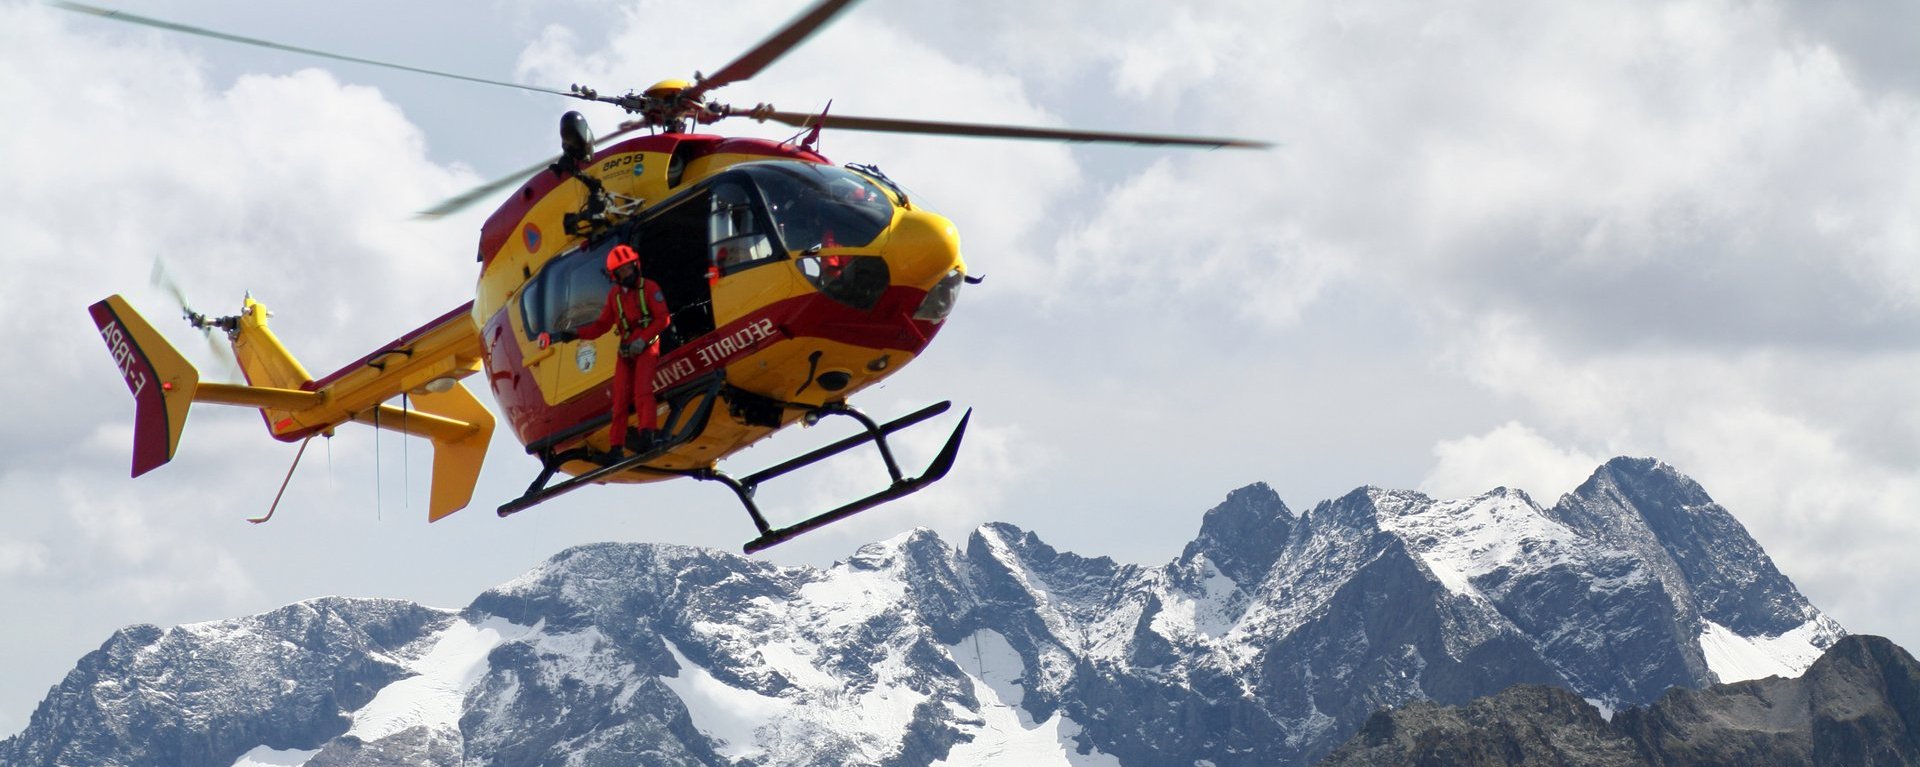 Ein Bergrettungshubschrauber mit einem Rettungshelfer fliegt über Gebirge. Der Hubschrauber im Einsatz ist im oberen linken Bildviertel platziert und befindet sich vor einem schönen Bergpanorama mit schneebedeckten Gipfeln bei einem hellen, mit Wolken bedeckten Himmel.